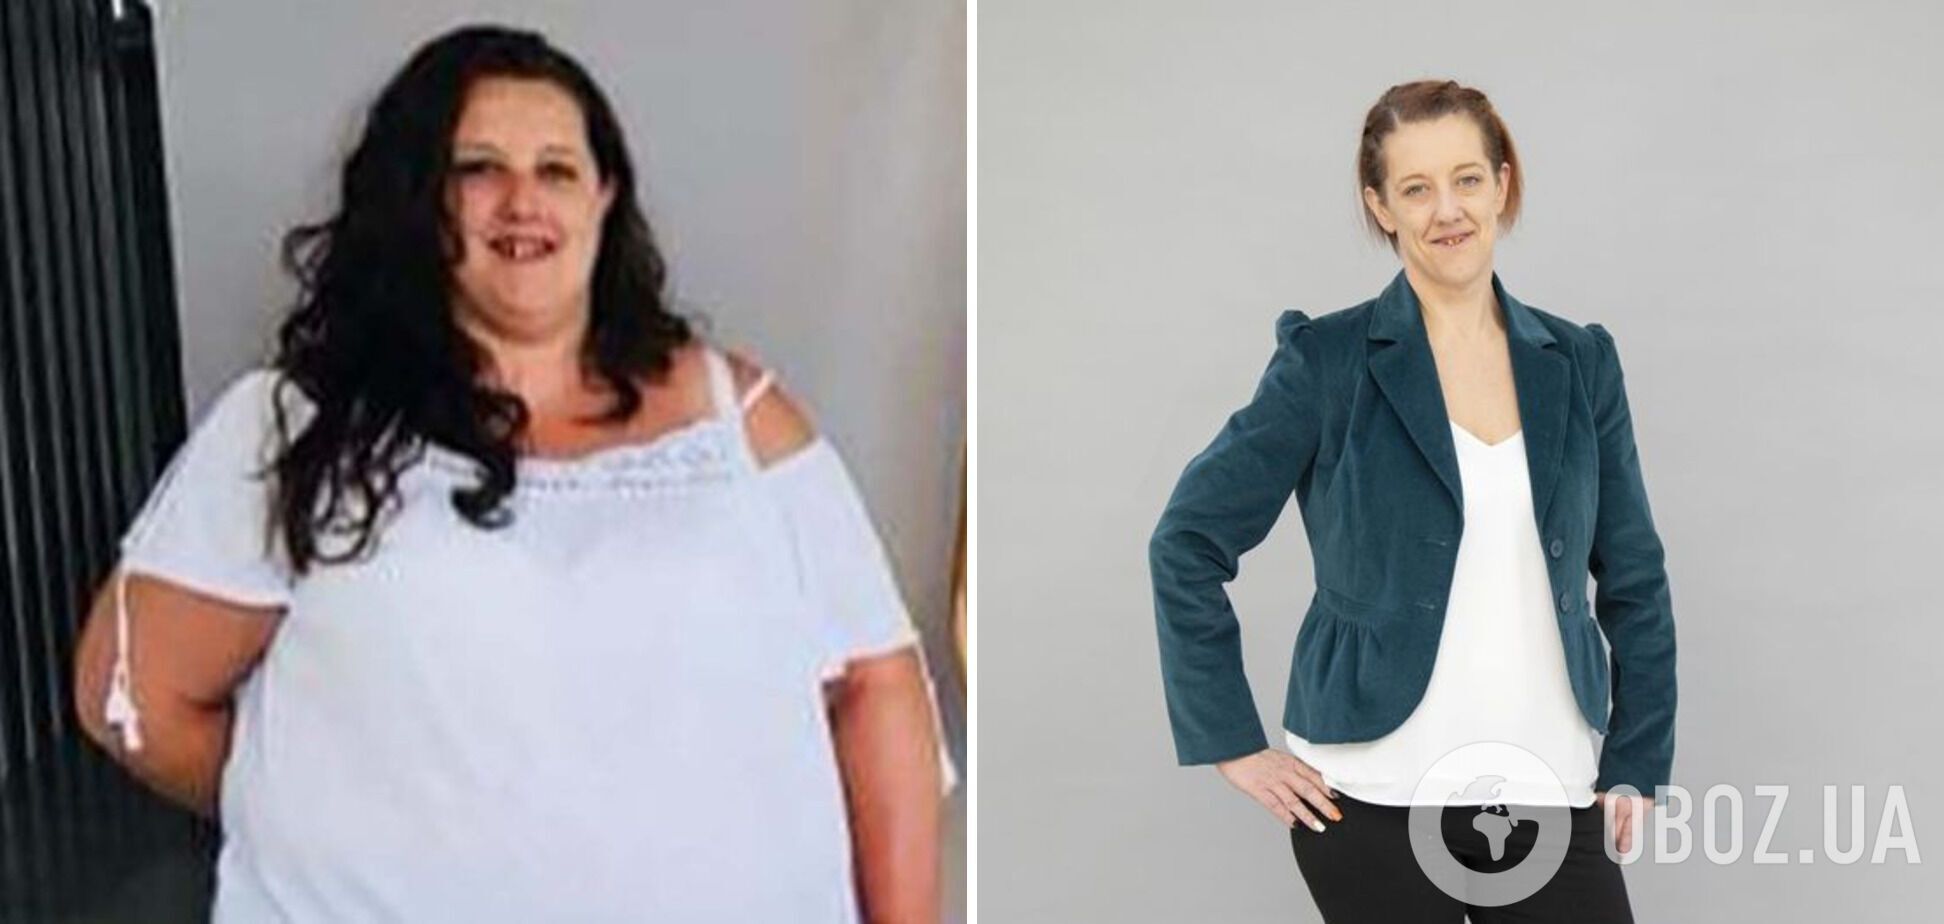 Англичанка Сара Купер до и после похудения.